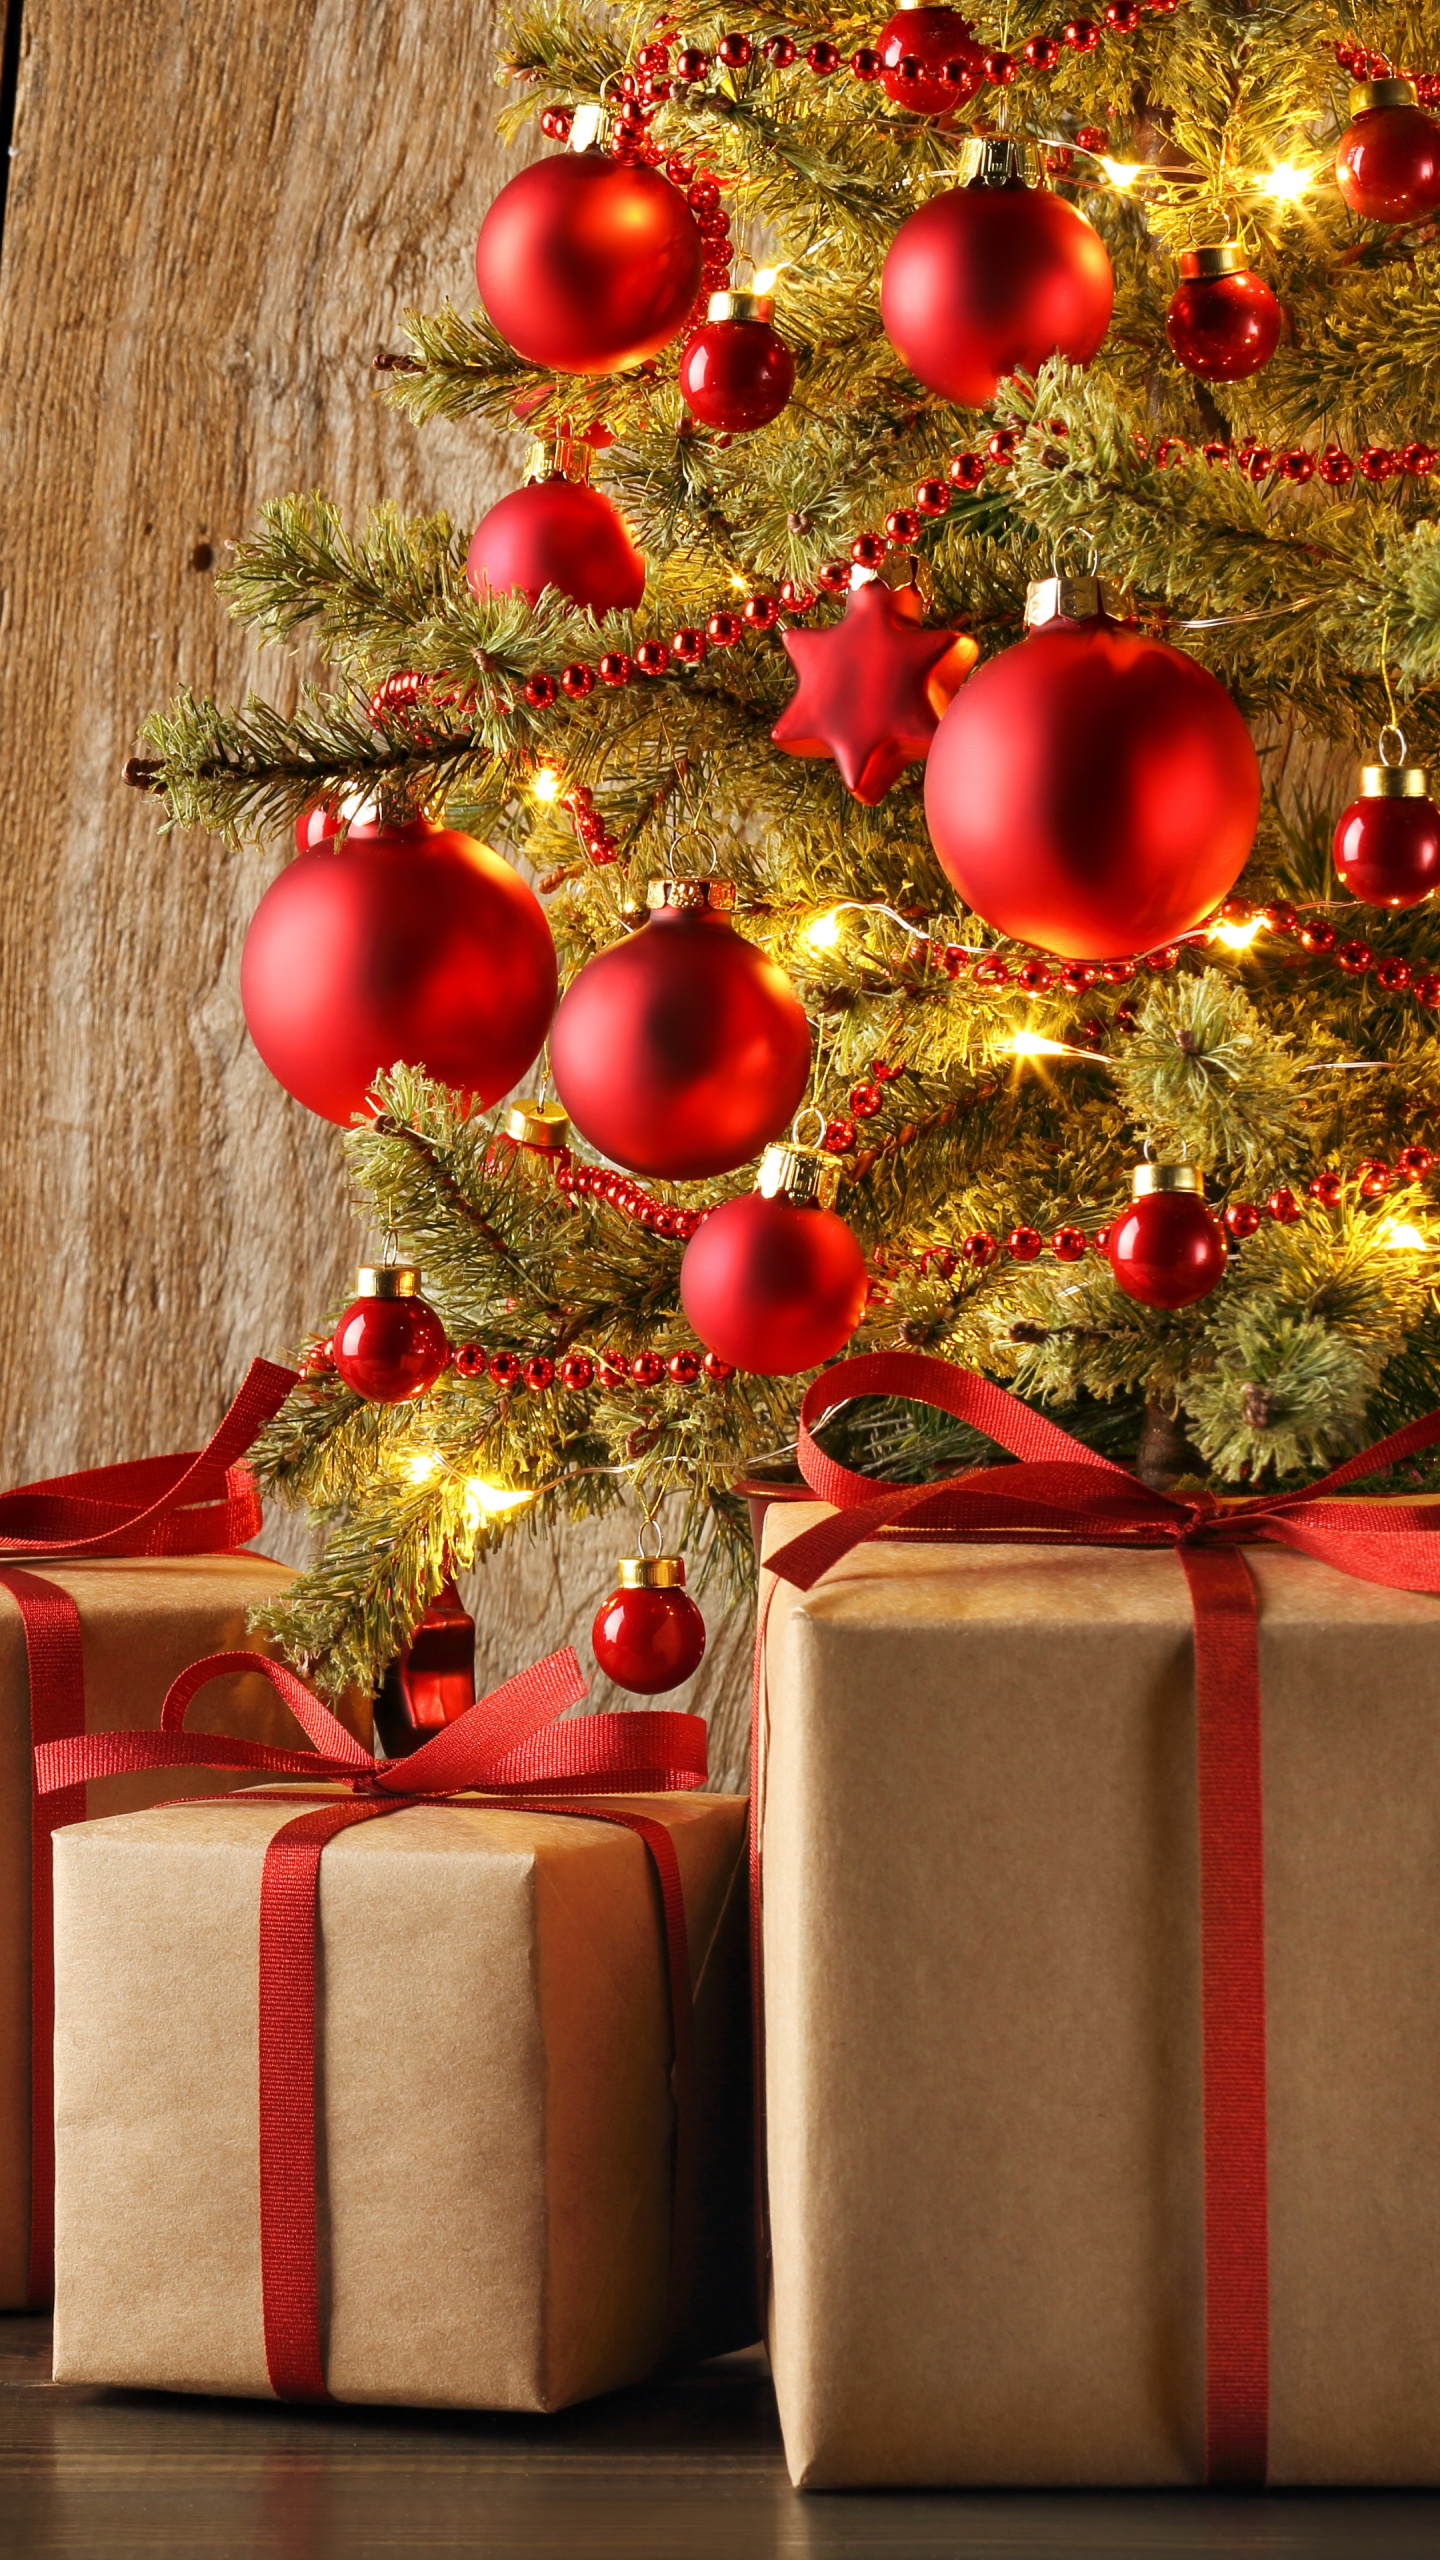 圣诞节那天, 礼物, 圣诞节的装饰品, 礼品包装, 新的一年 壁纸 1440x2560 允许